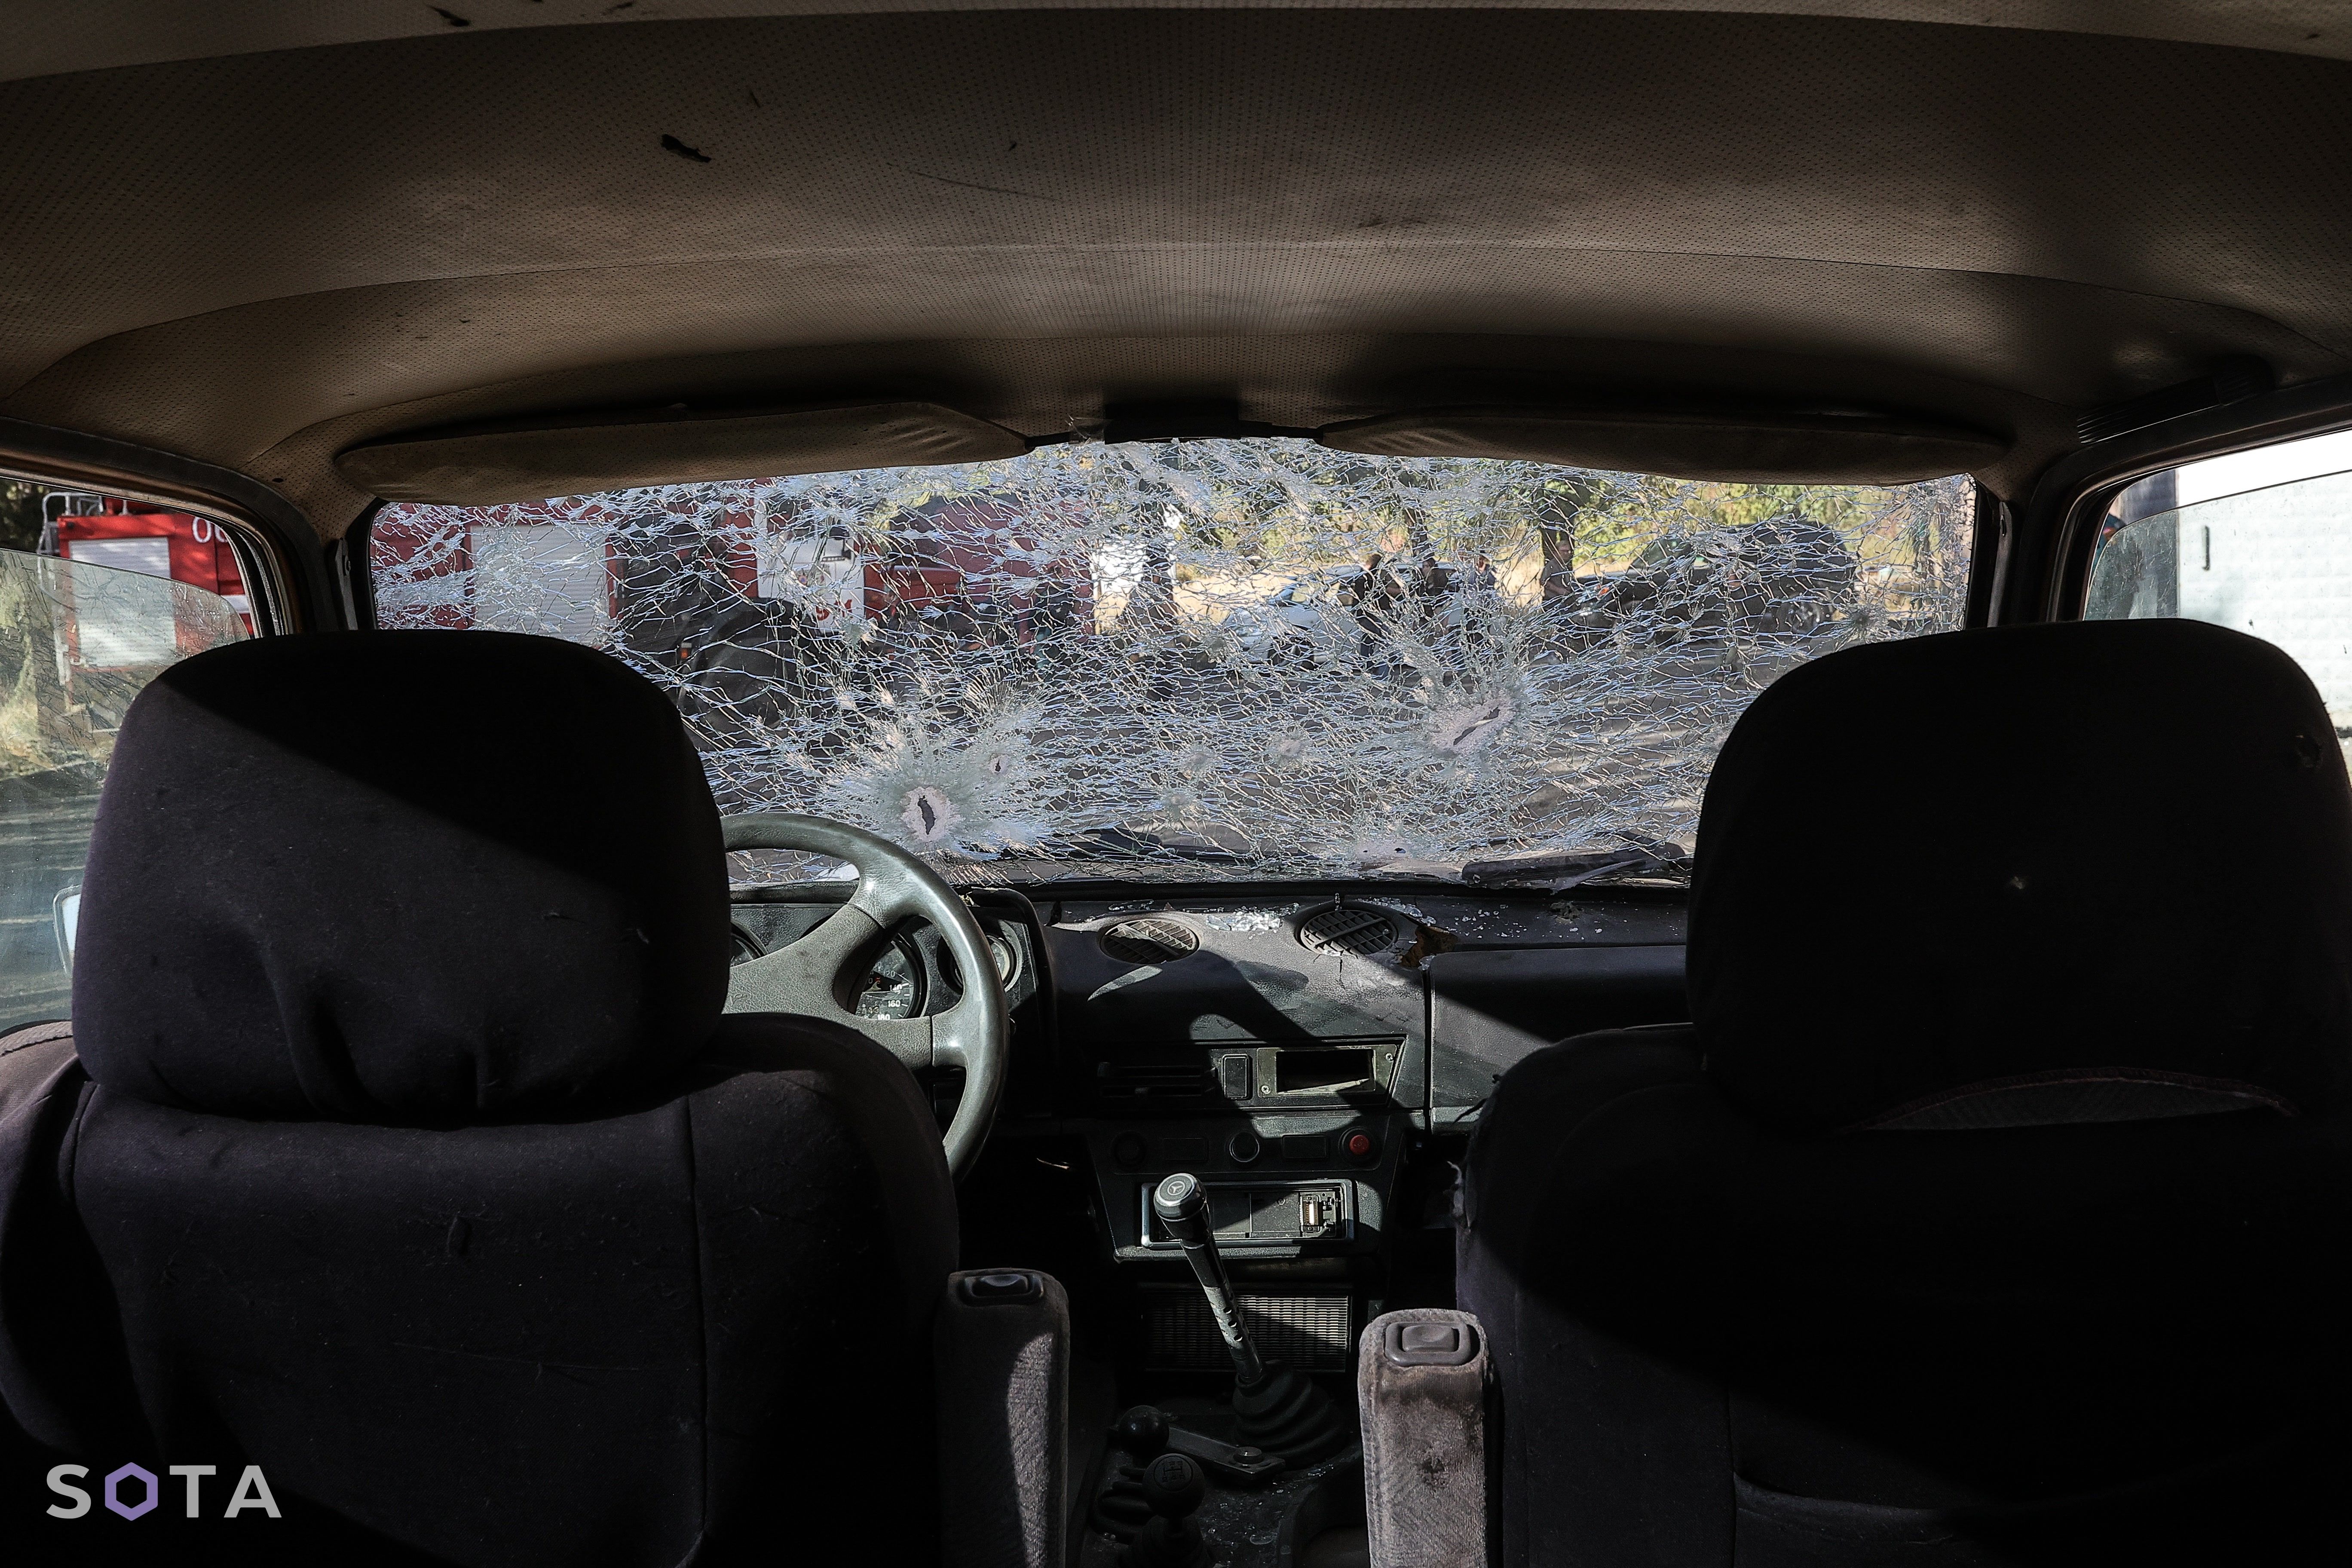 Последствия обстрела. Машина стояла около пожарной станции города.
Василий Крестьянинов / SOTA